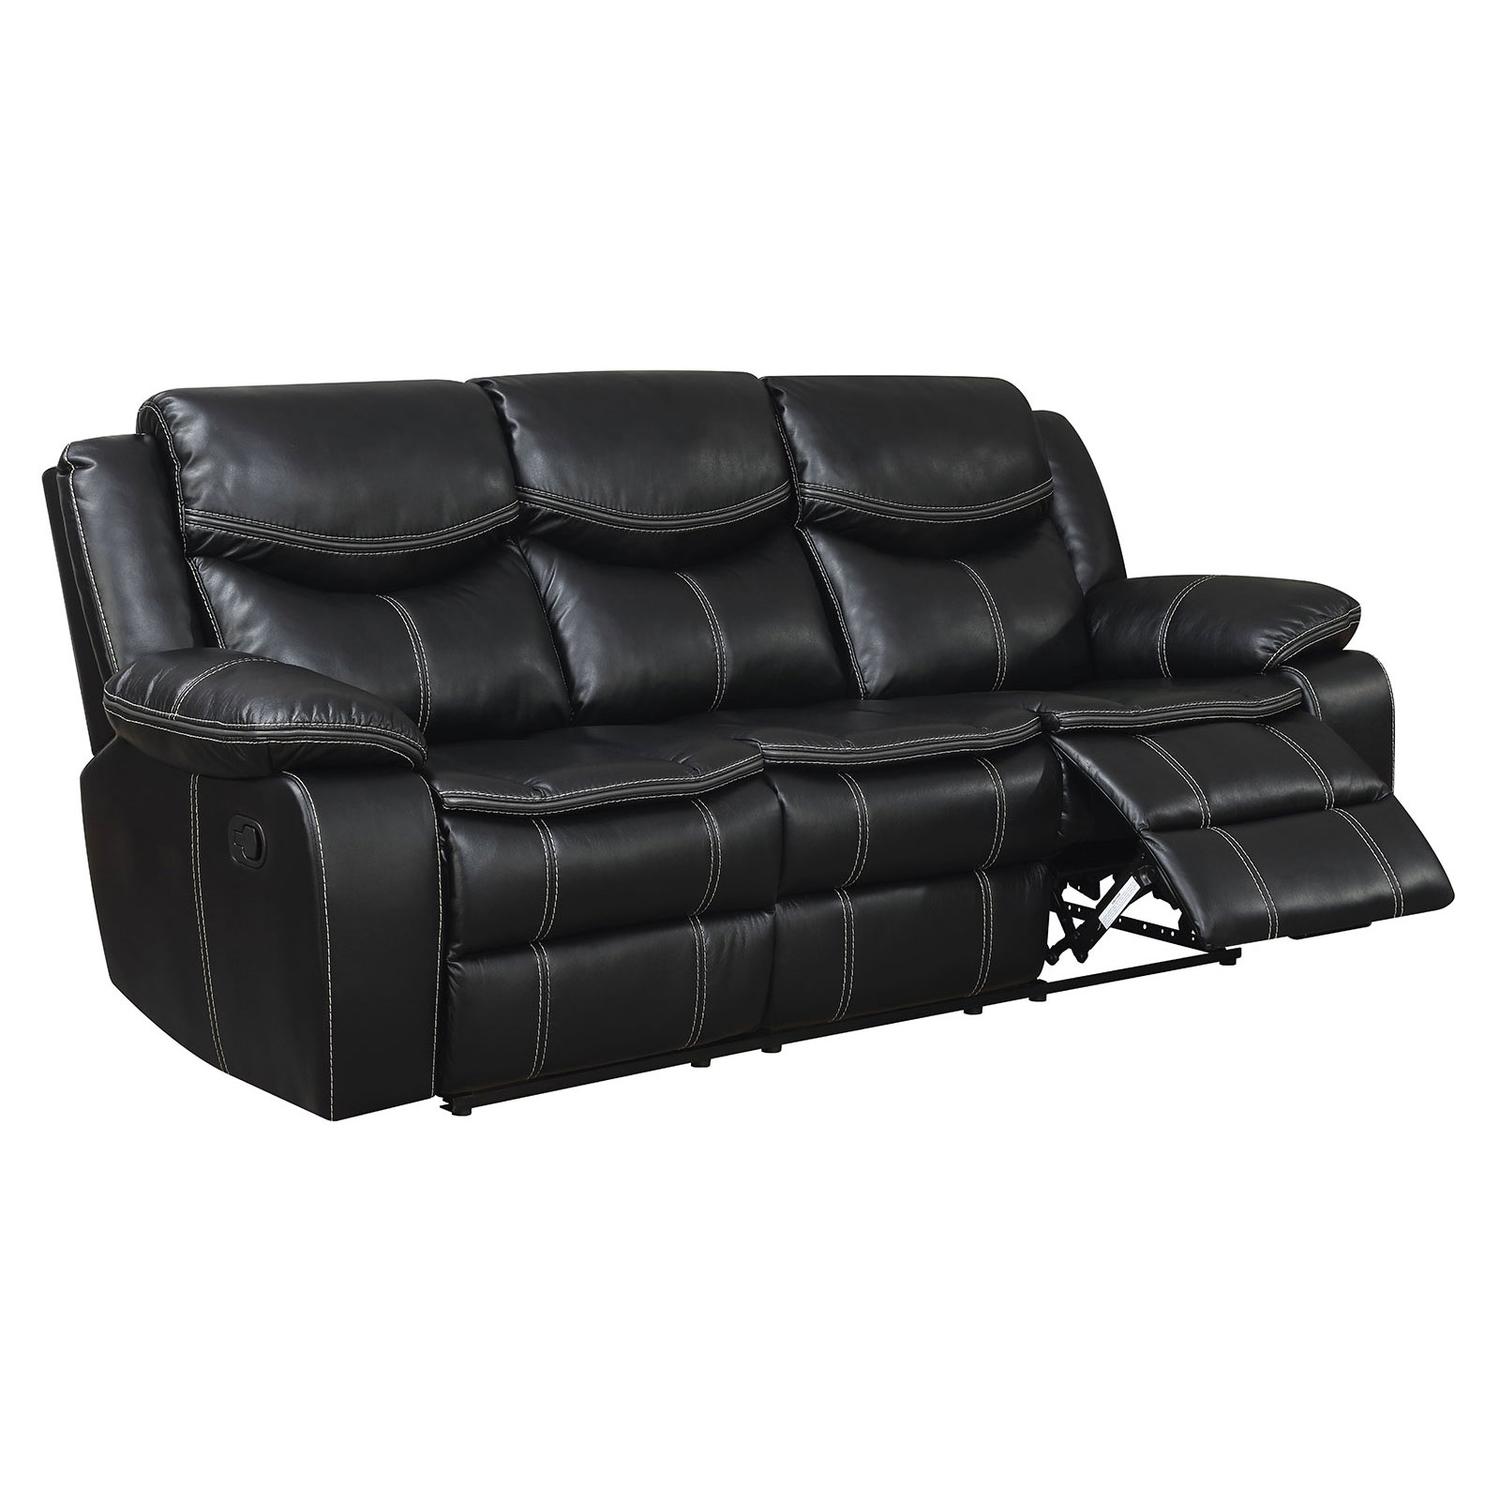 Furniture of America CM6981-SF Pollux Recliner Sofa